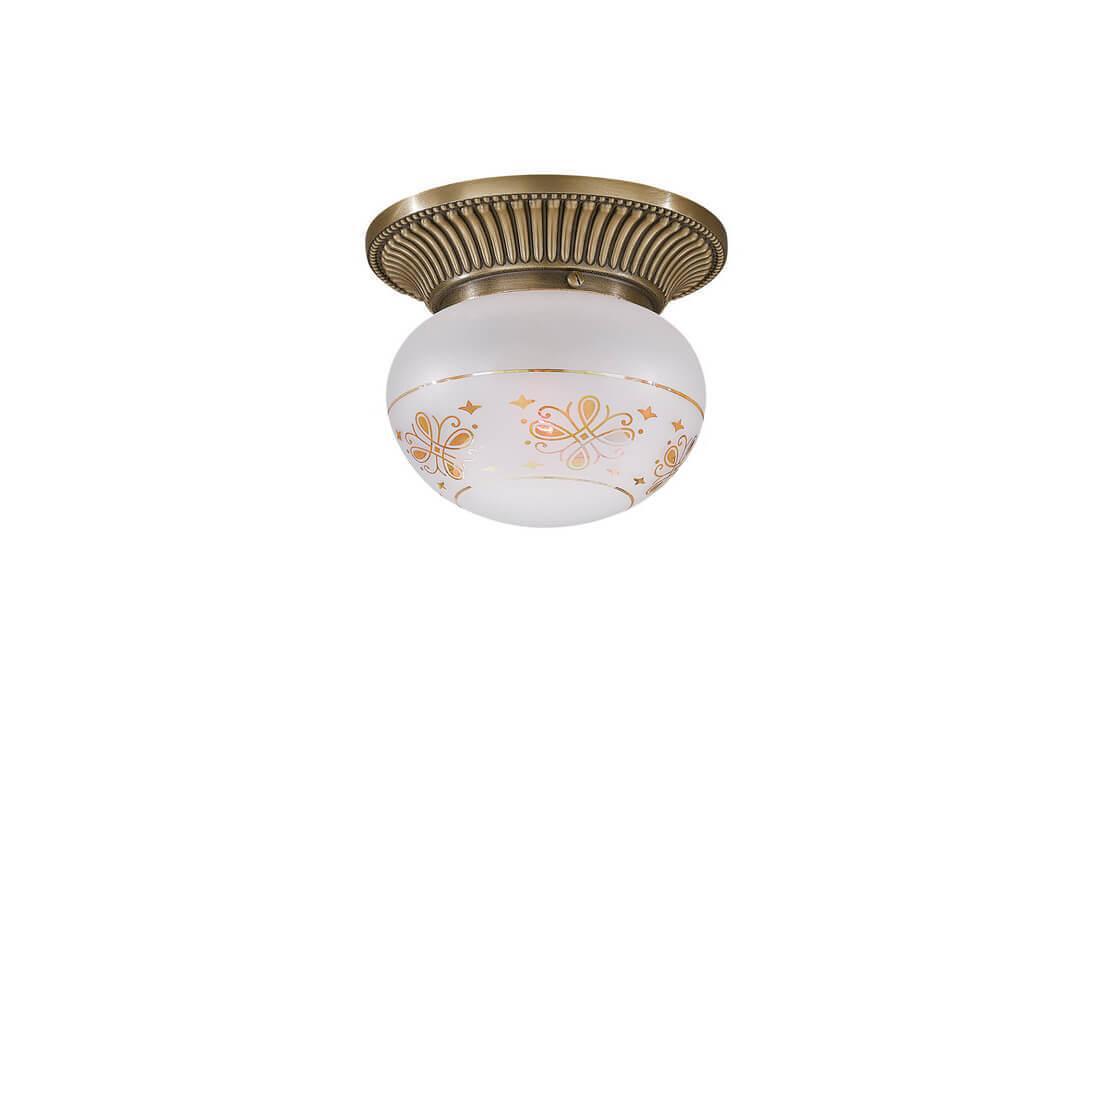 Потолочный светильник Reccagni Angelo PL.7705/1 потолочная люстра reccagni angelo pl 2701 5